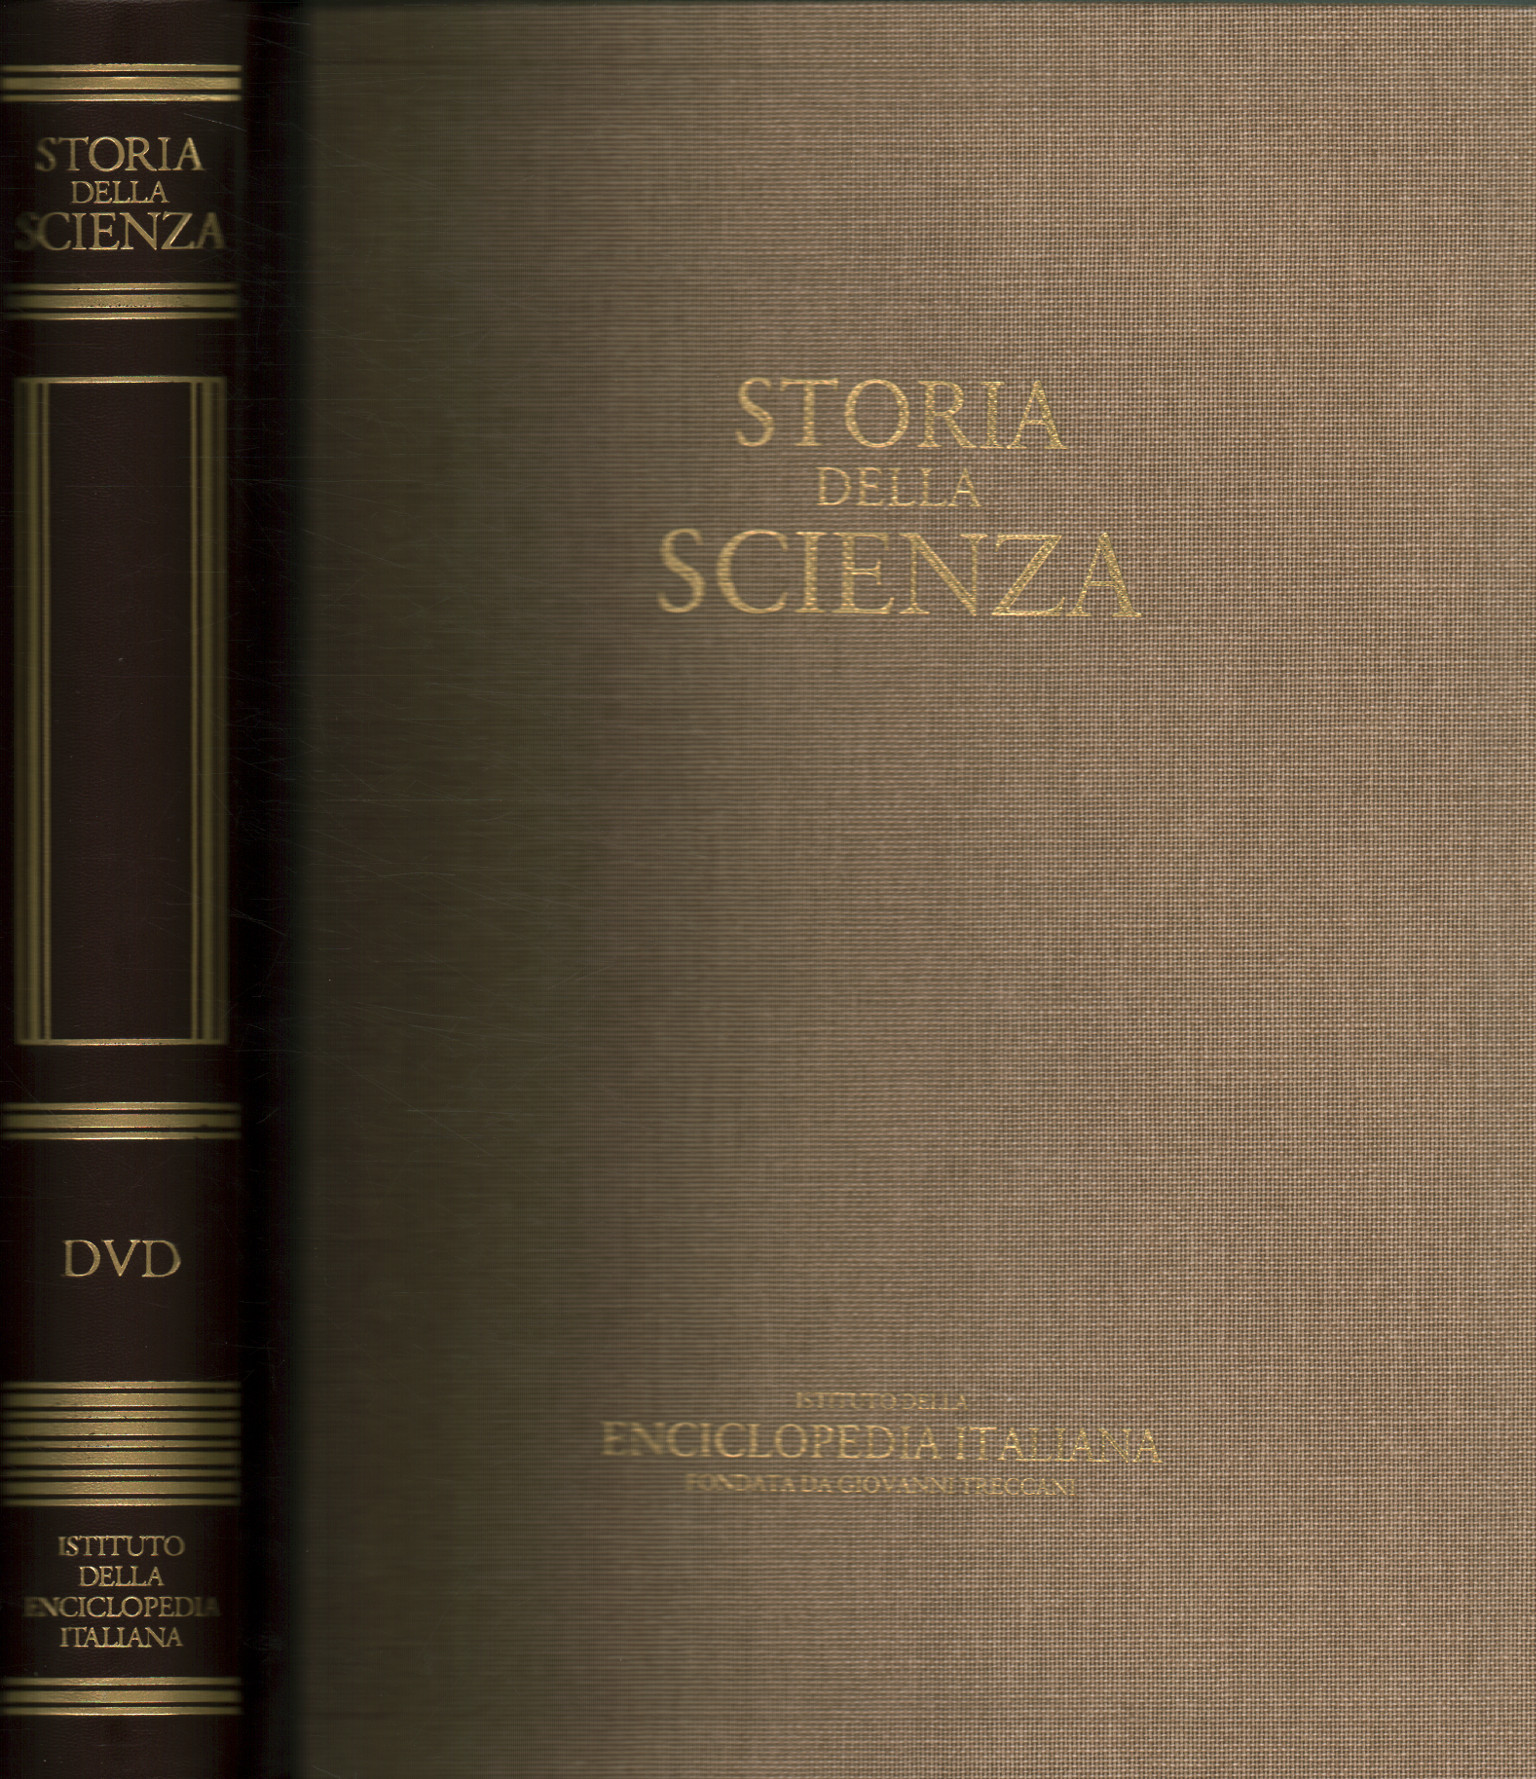 Geschichte der Wissenschaft. DVD, Wissenschaftsgeschichte (mit DVD)